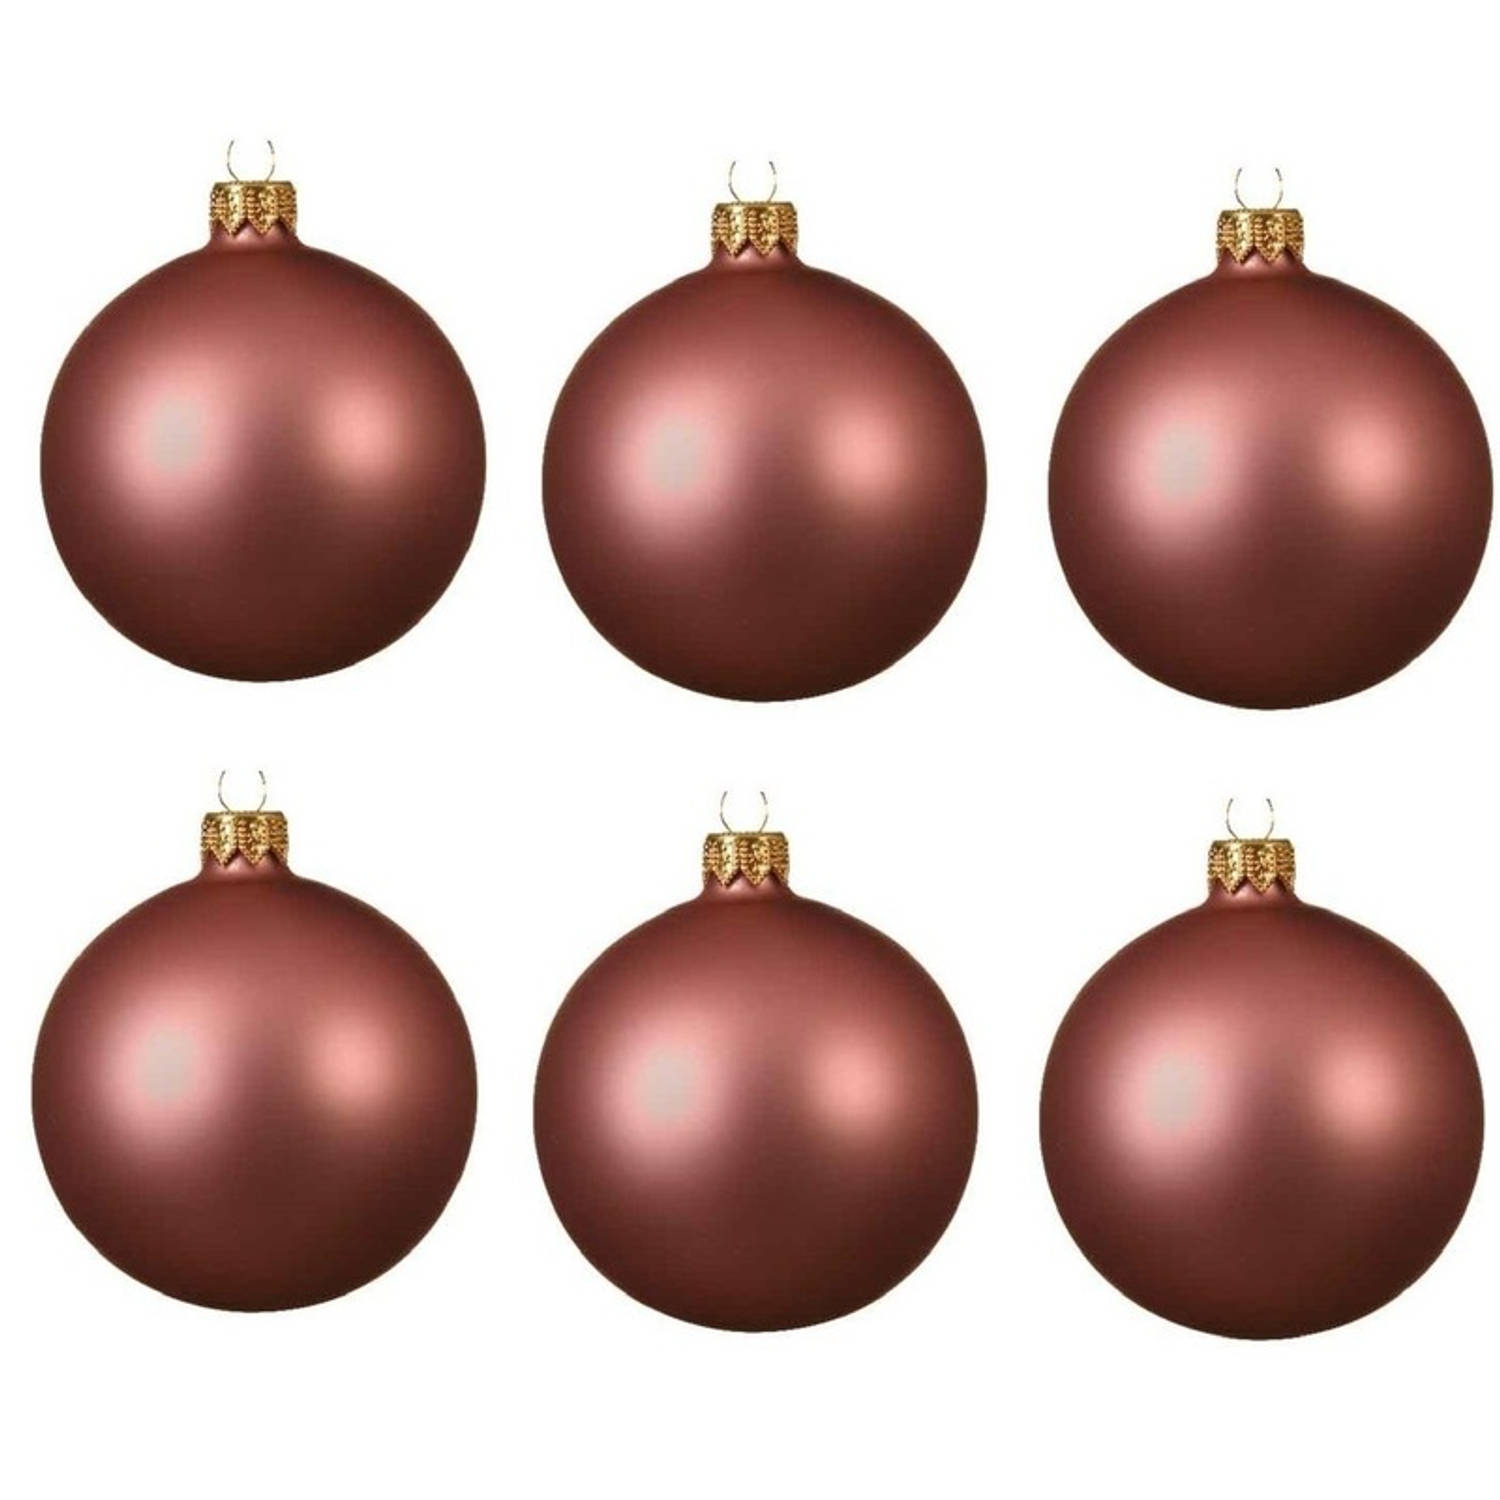 6x Glazen kerstballen mat oud roze 6 cm kerstboom versiering/decoratie - Kerstbal